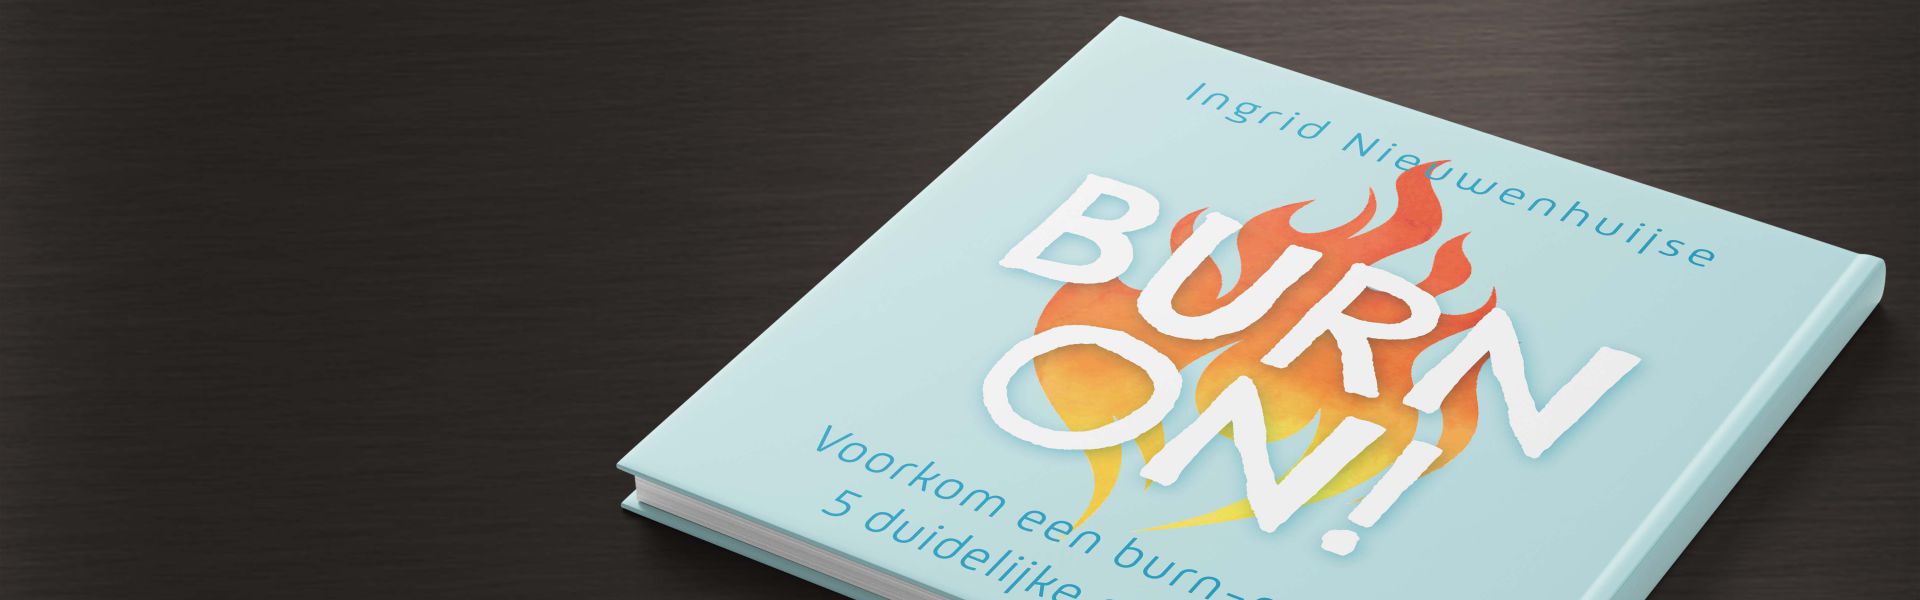 Burn on!: Voorkom een burn-out in 5 duidelijke stappen